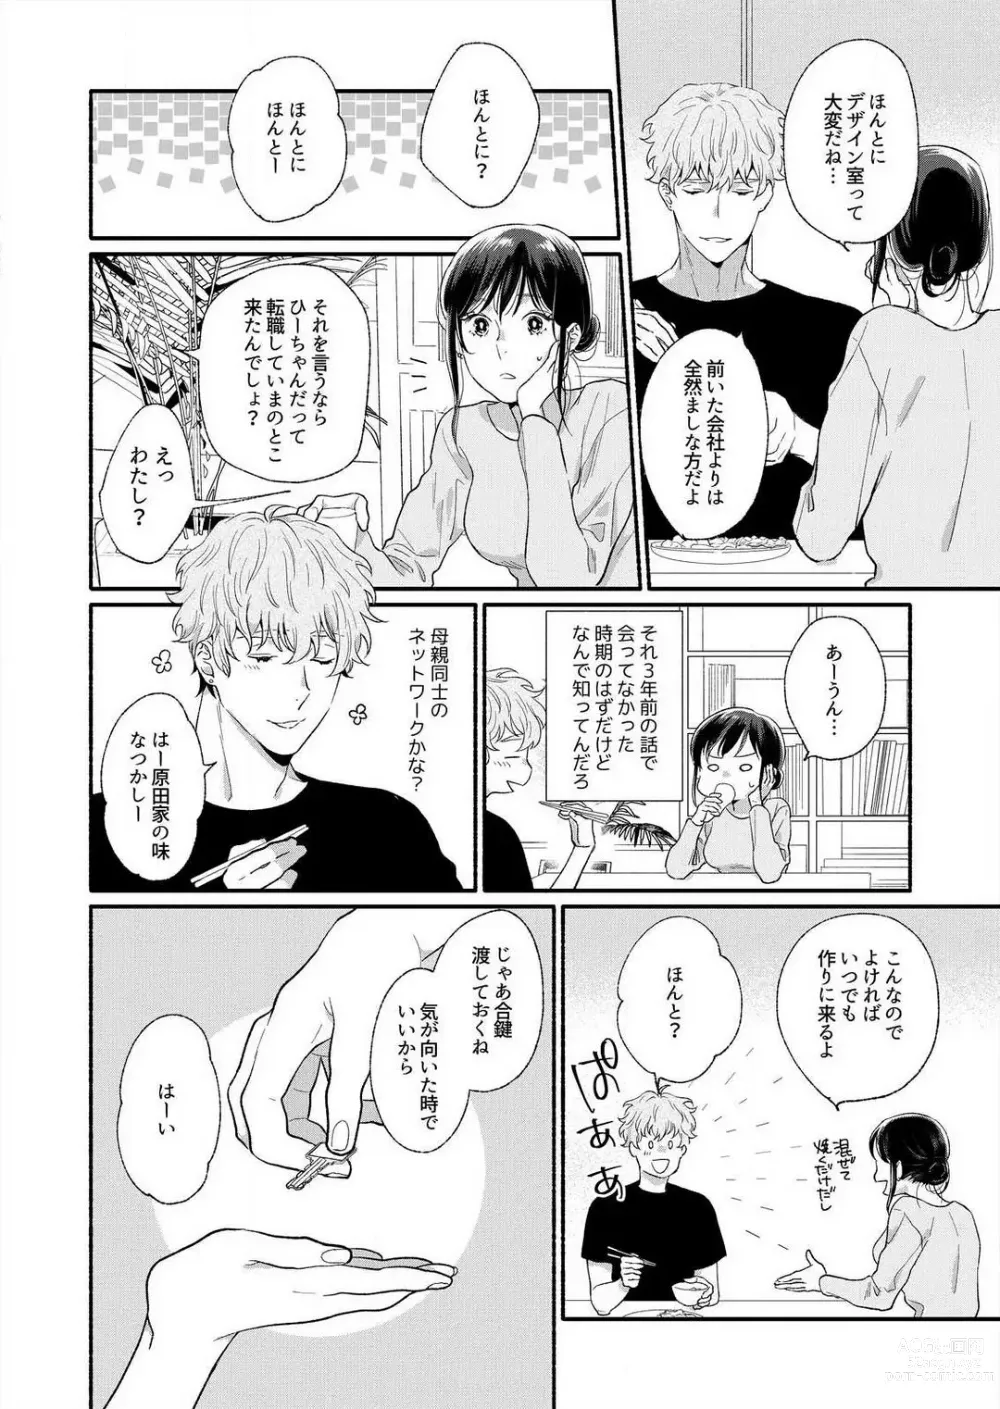 Page 15 of manga Suki Kawaii Guchagucha ni Shitai - Osananajimi wa Kojirase Sugiteru 1-8